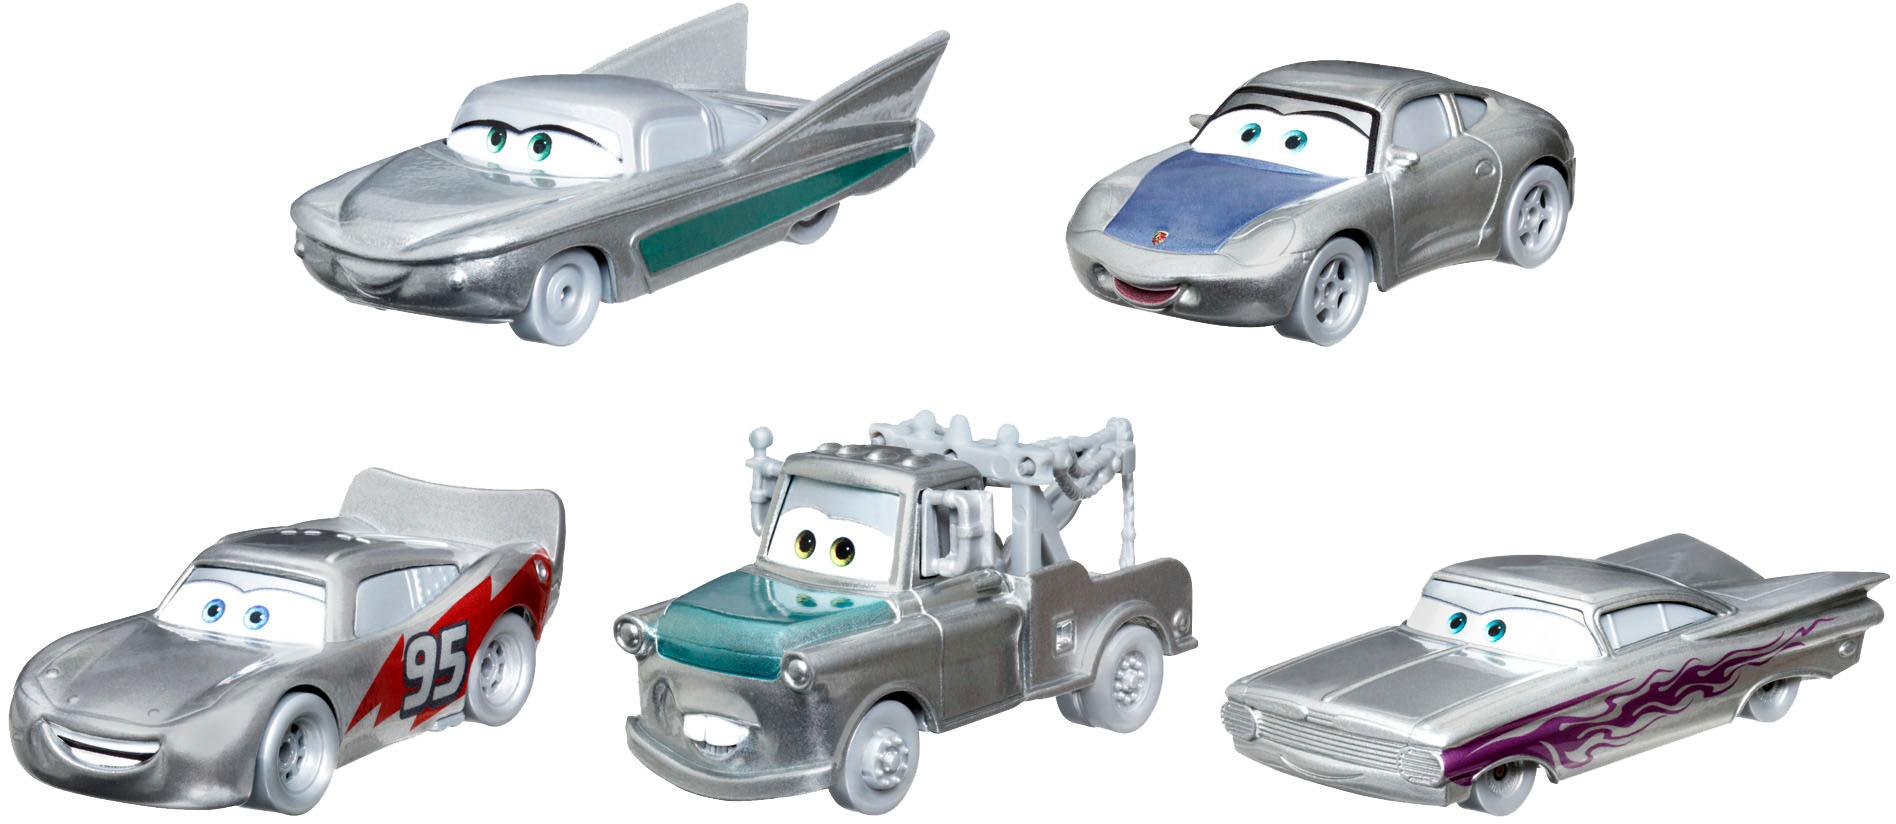 Disney D100 Pixar Cars 1:55 Scale (5-Pack) Grey HPL98 - Best Buy